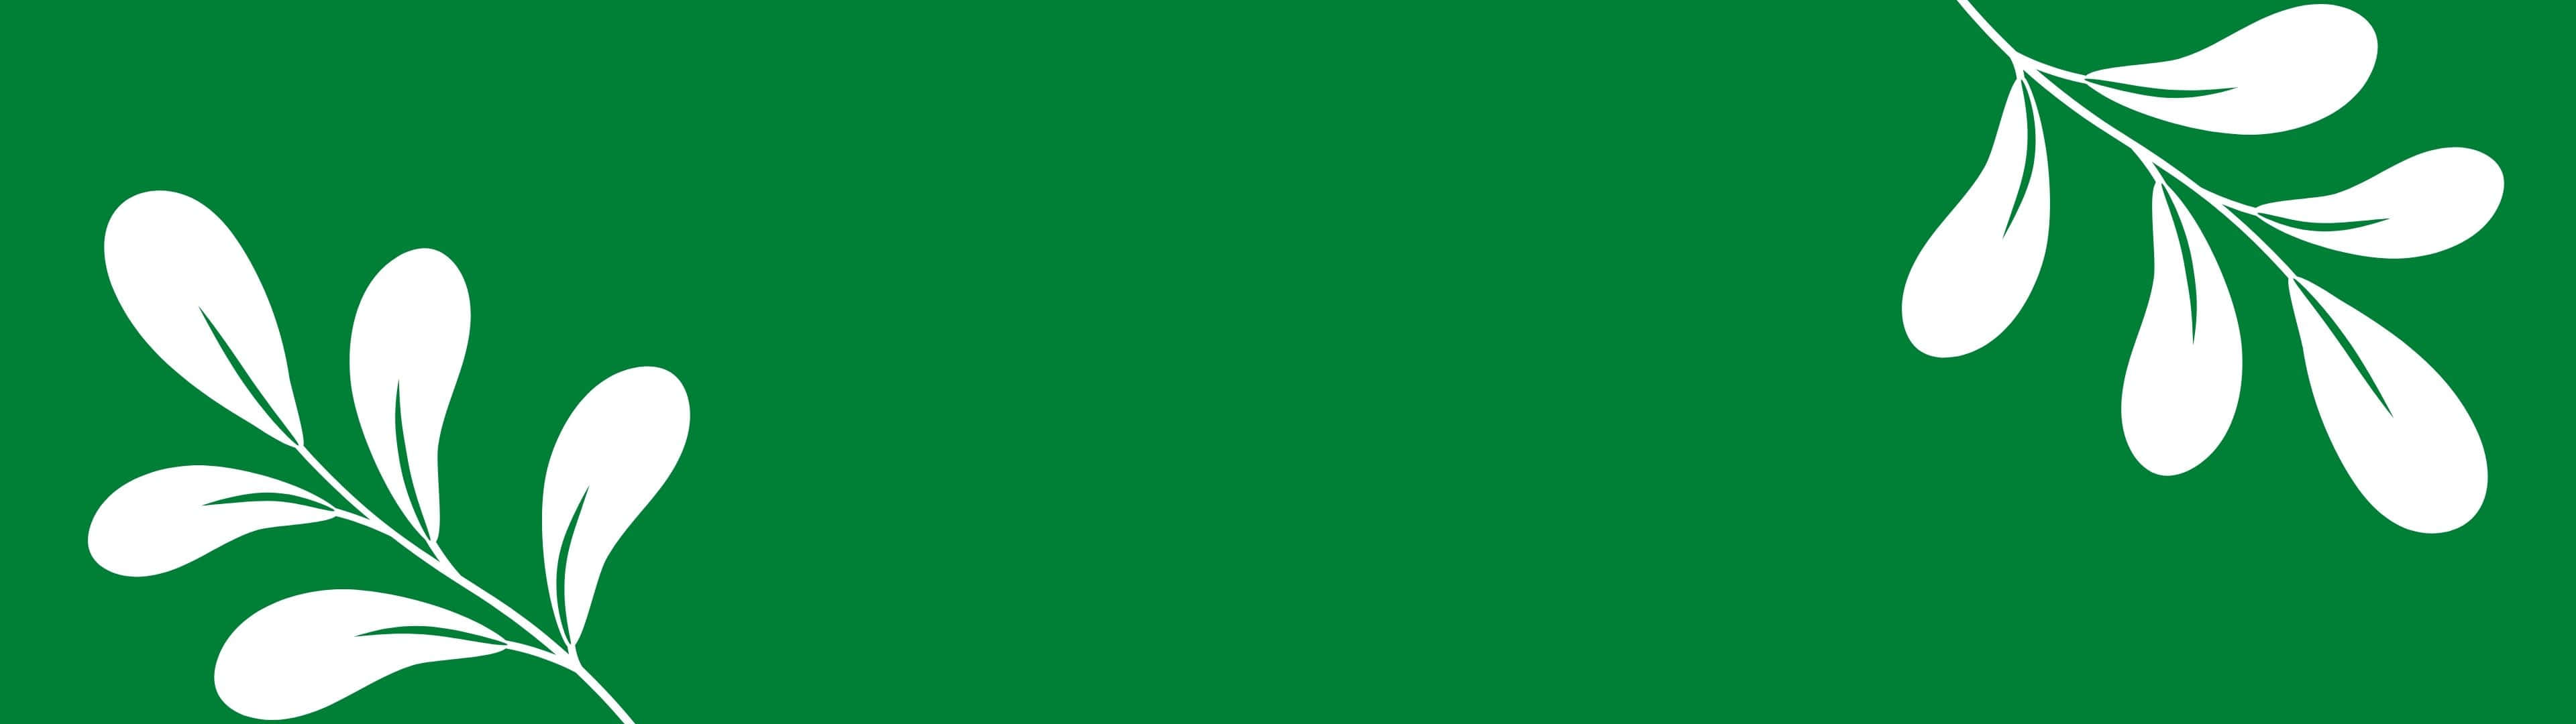 Unosfondo Verde Con Foglie Bianche Su Di Esso